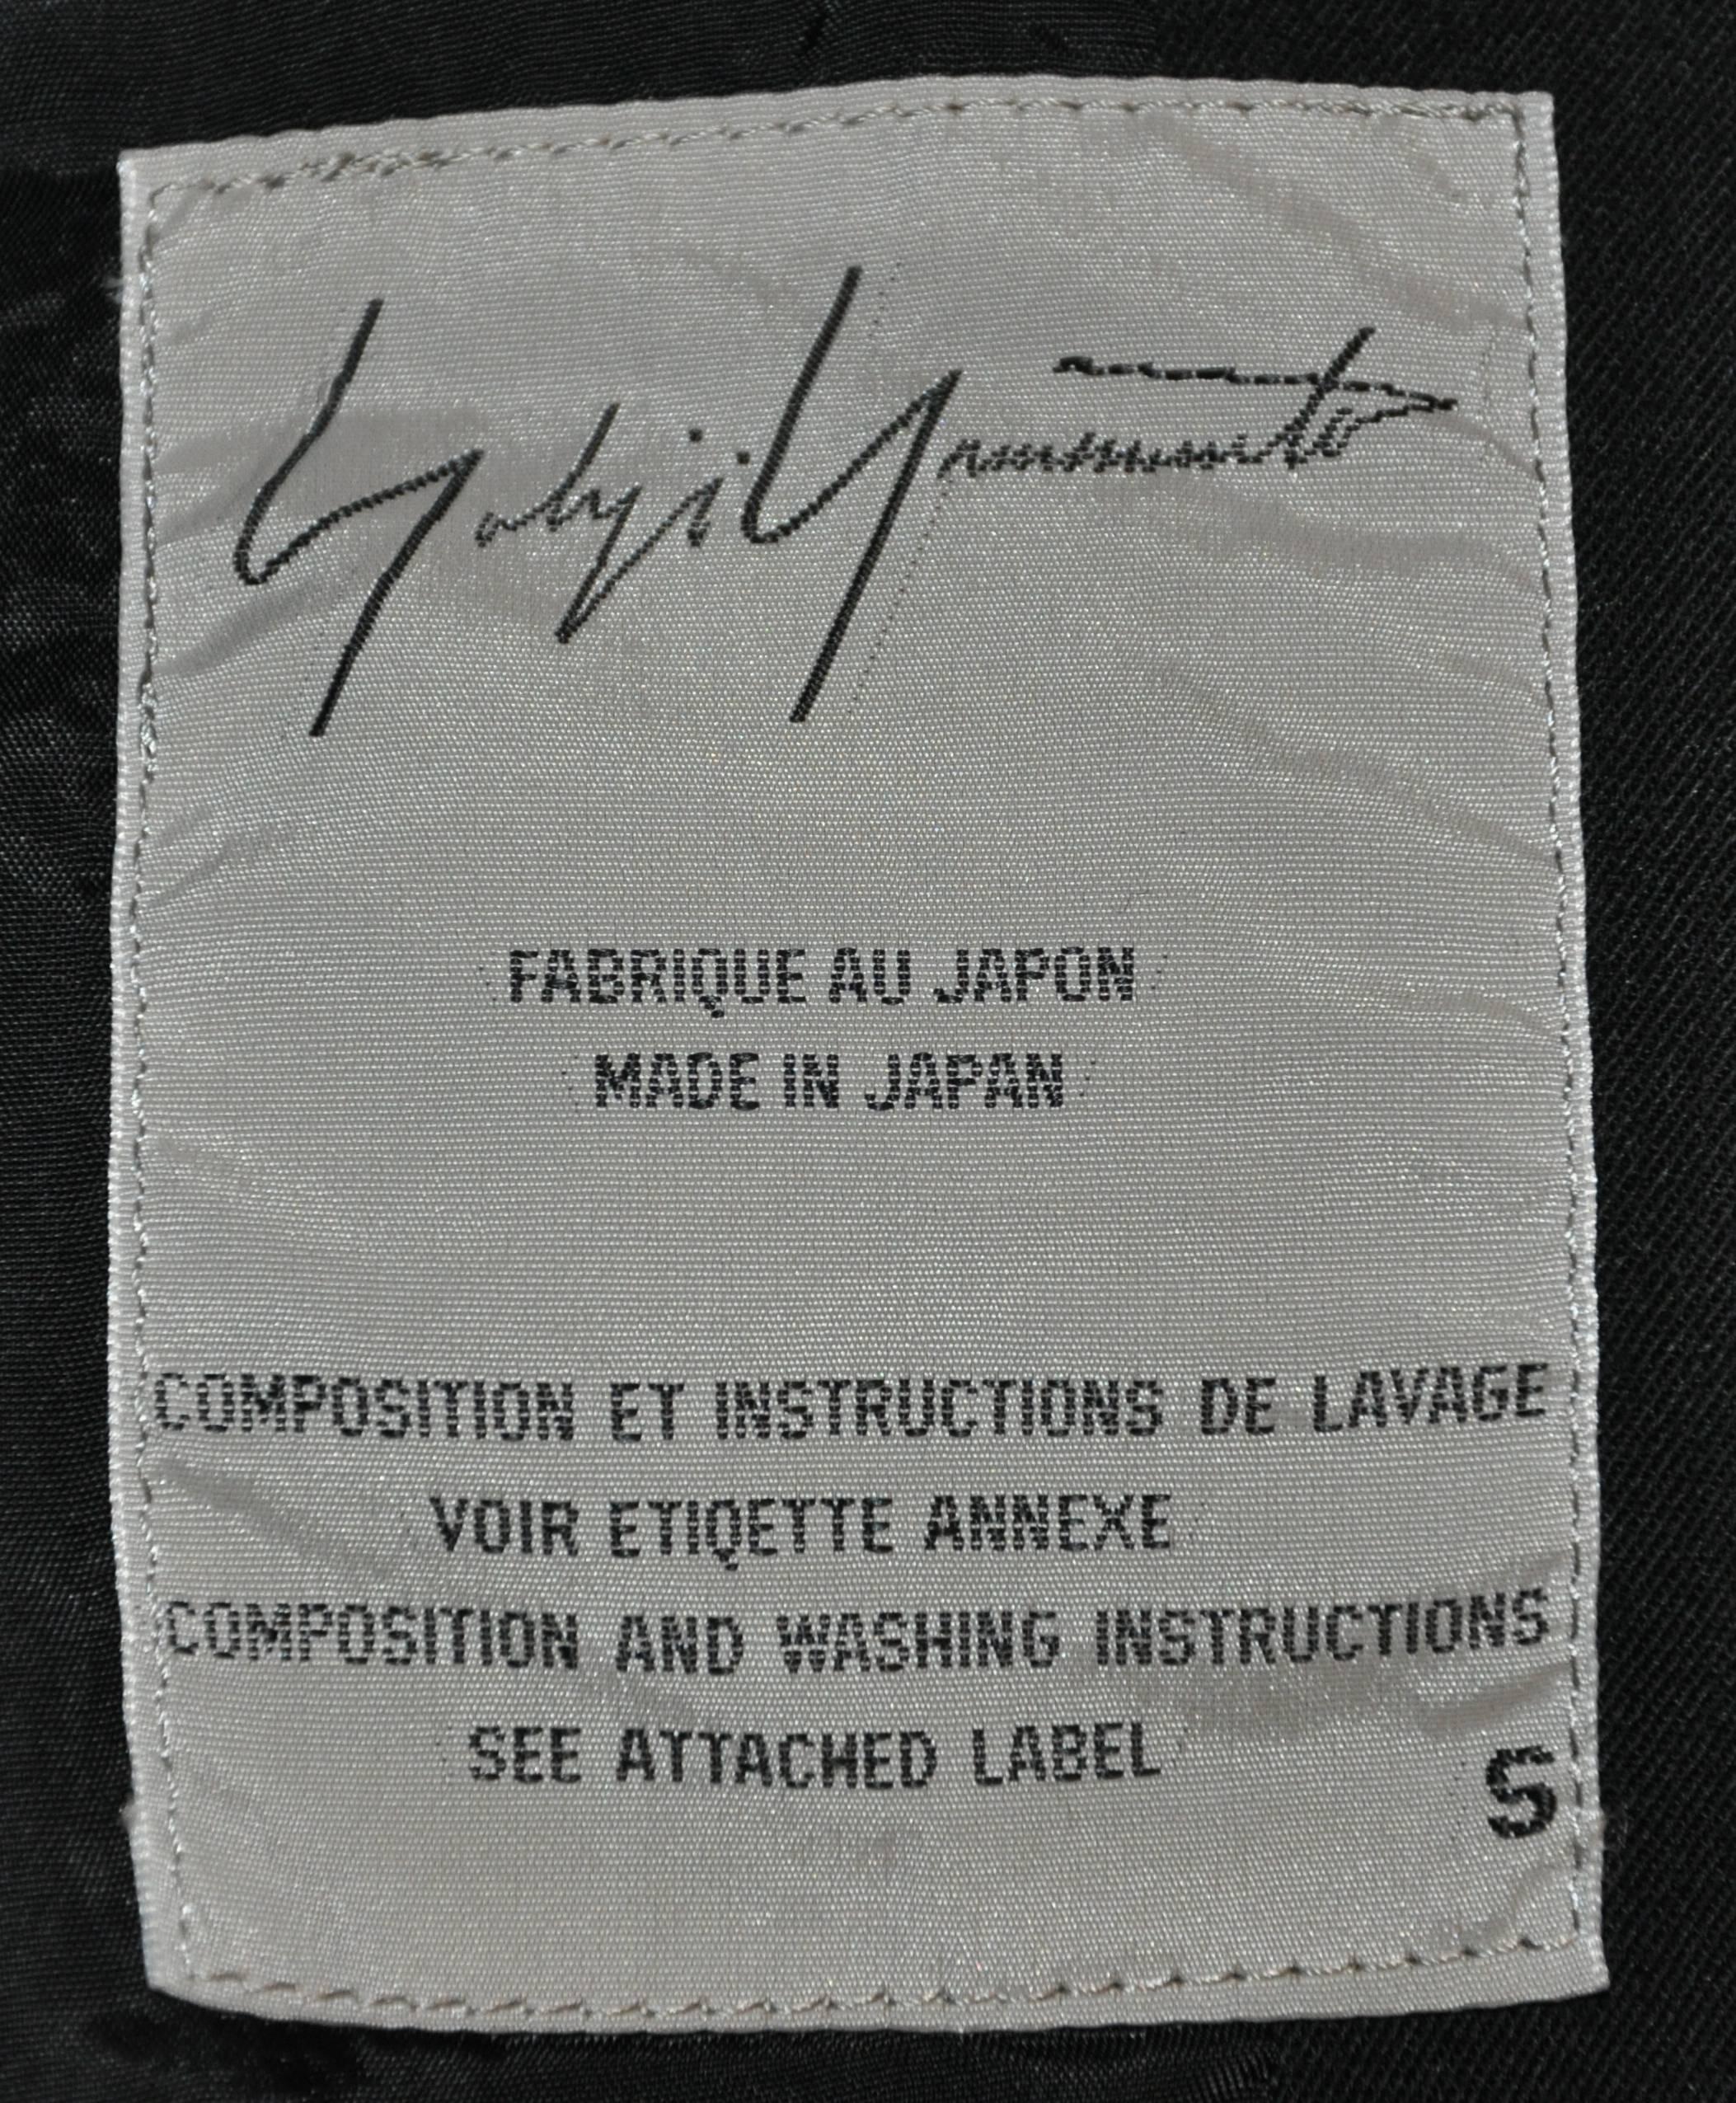 Yohji Yamamoto Black Deconstructed with Boning Bodice Button Jacket For ...